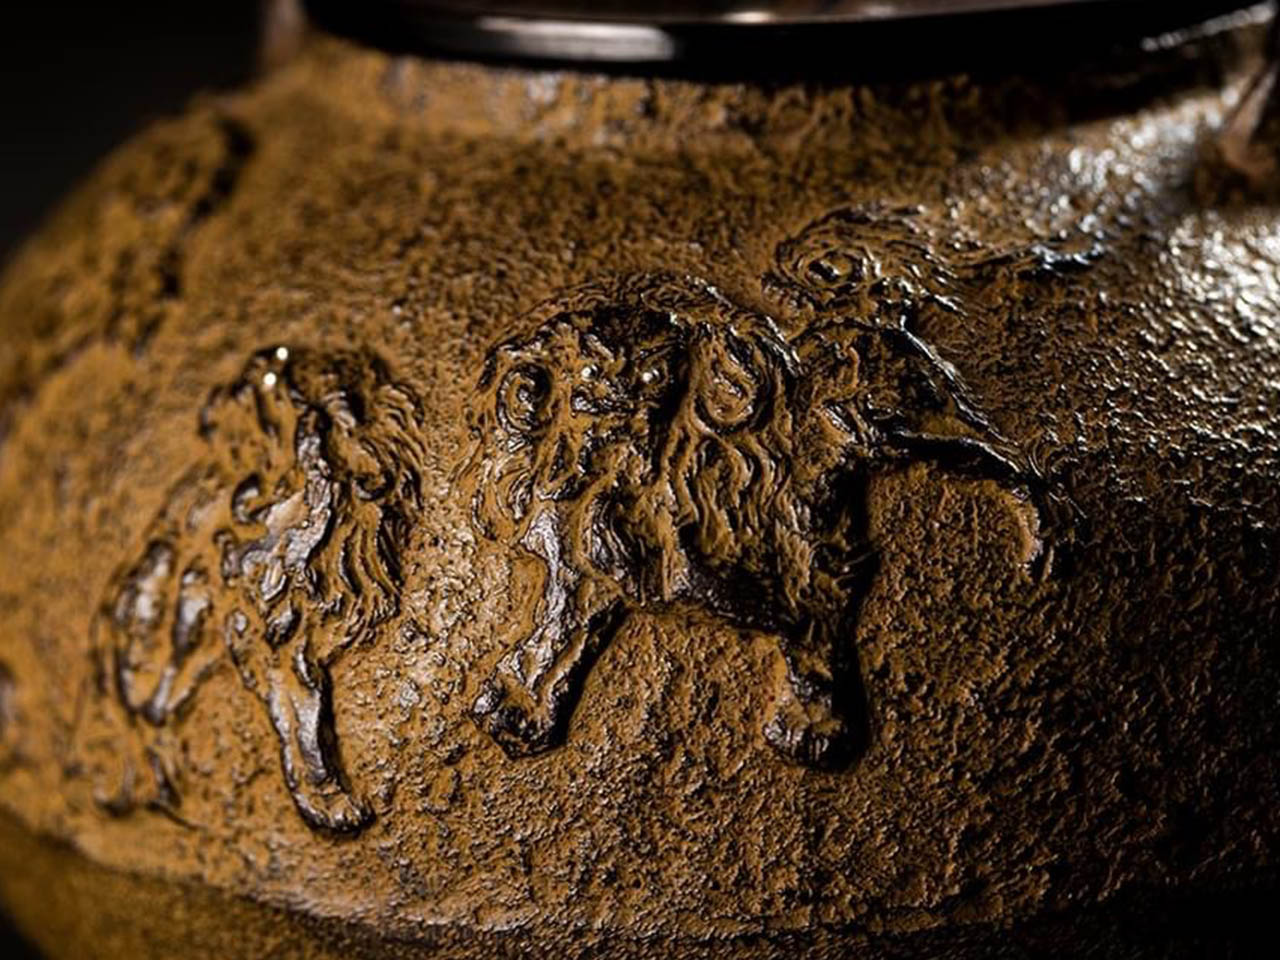 茶具 蠟型鐵壺 唐獅子牡丹紋 2.2L 獲獎作品 佐藤清光 山形鑄物 金屬工藝品